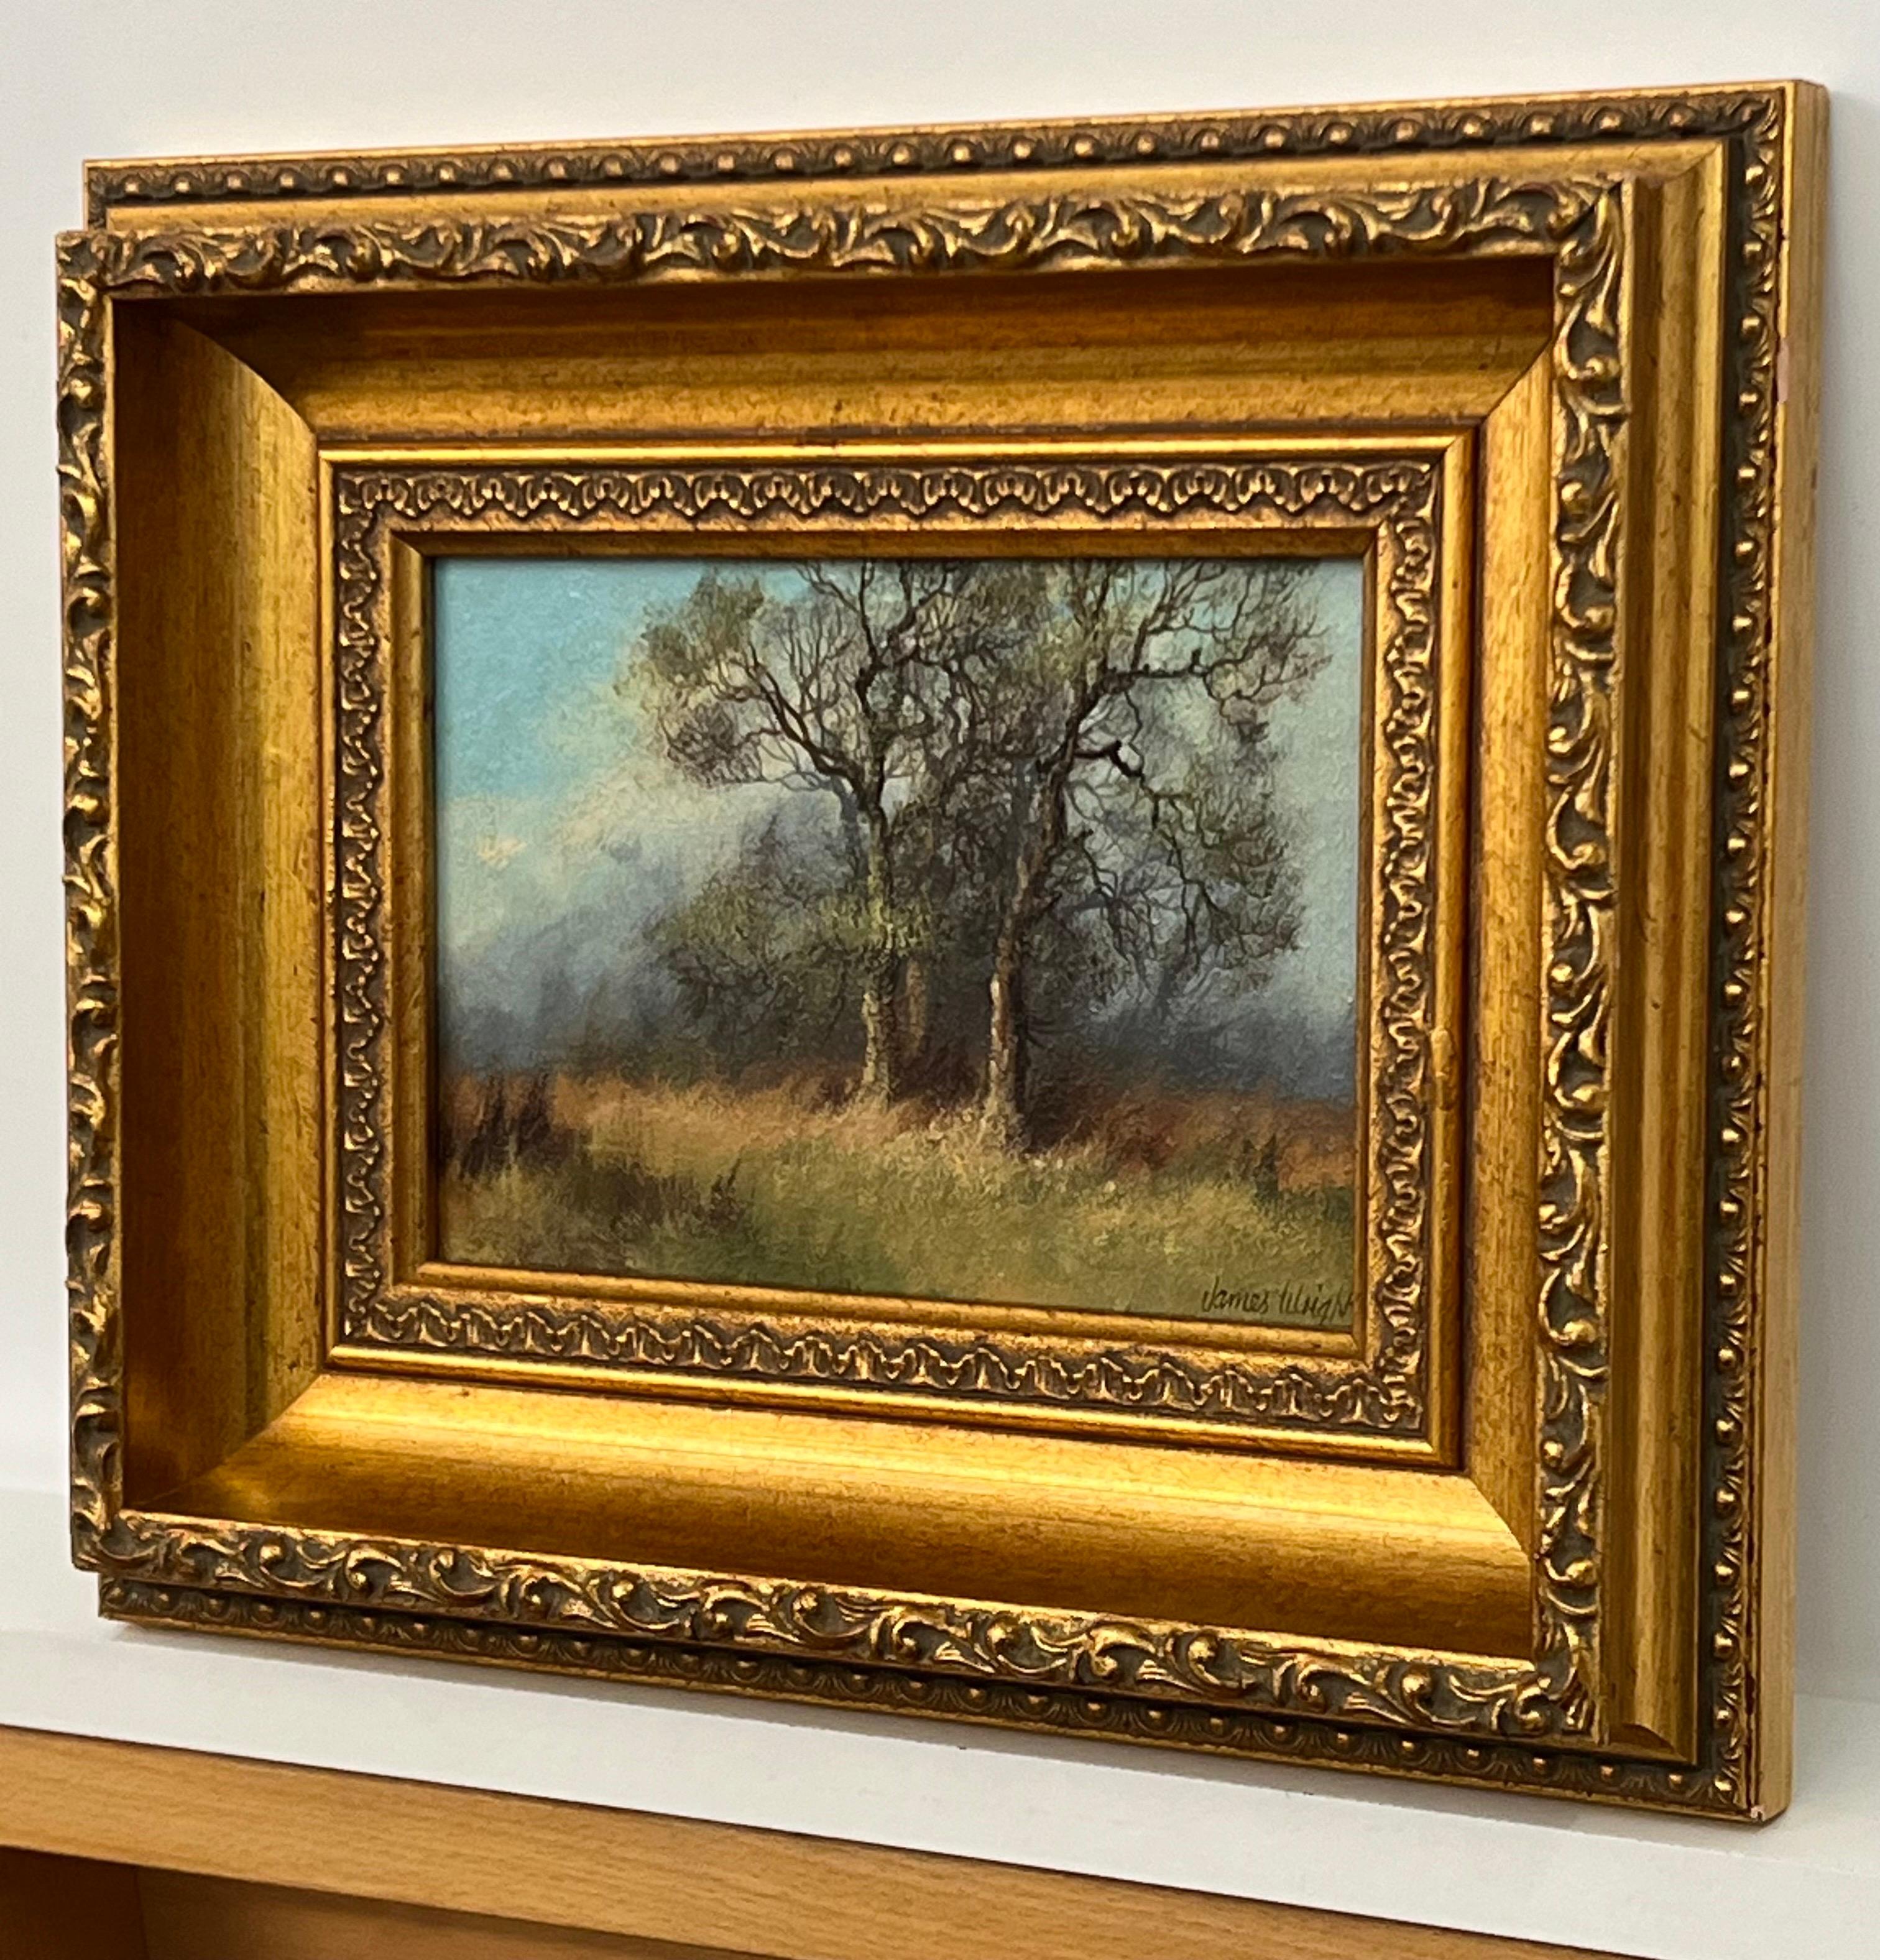 Étude des arbres et des champs dans la campagne anglaise par l'artiste paysagiste britannique du XXe siècle, James Wright

Huile sur toile originale signée, présentée dans un magnifique cadre doré orné.
Provenance : Fait partie de la série no 429 du